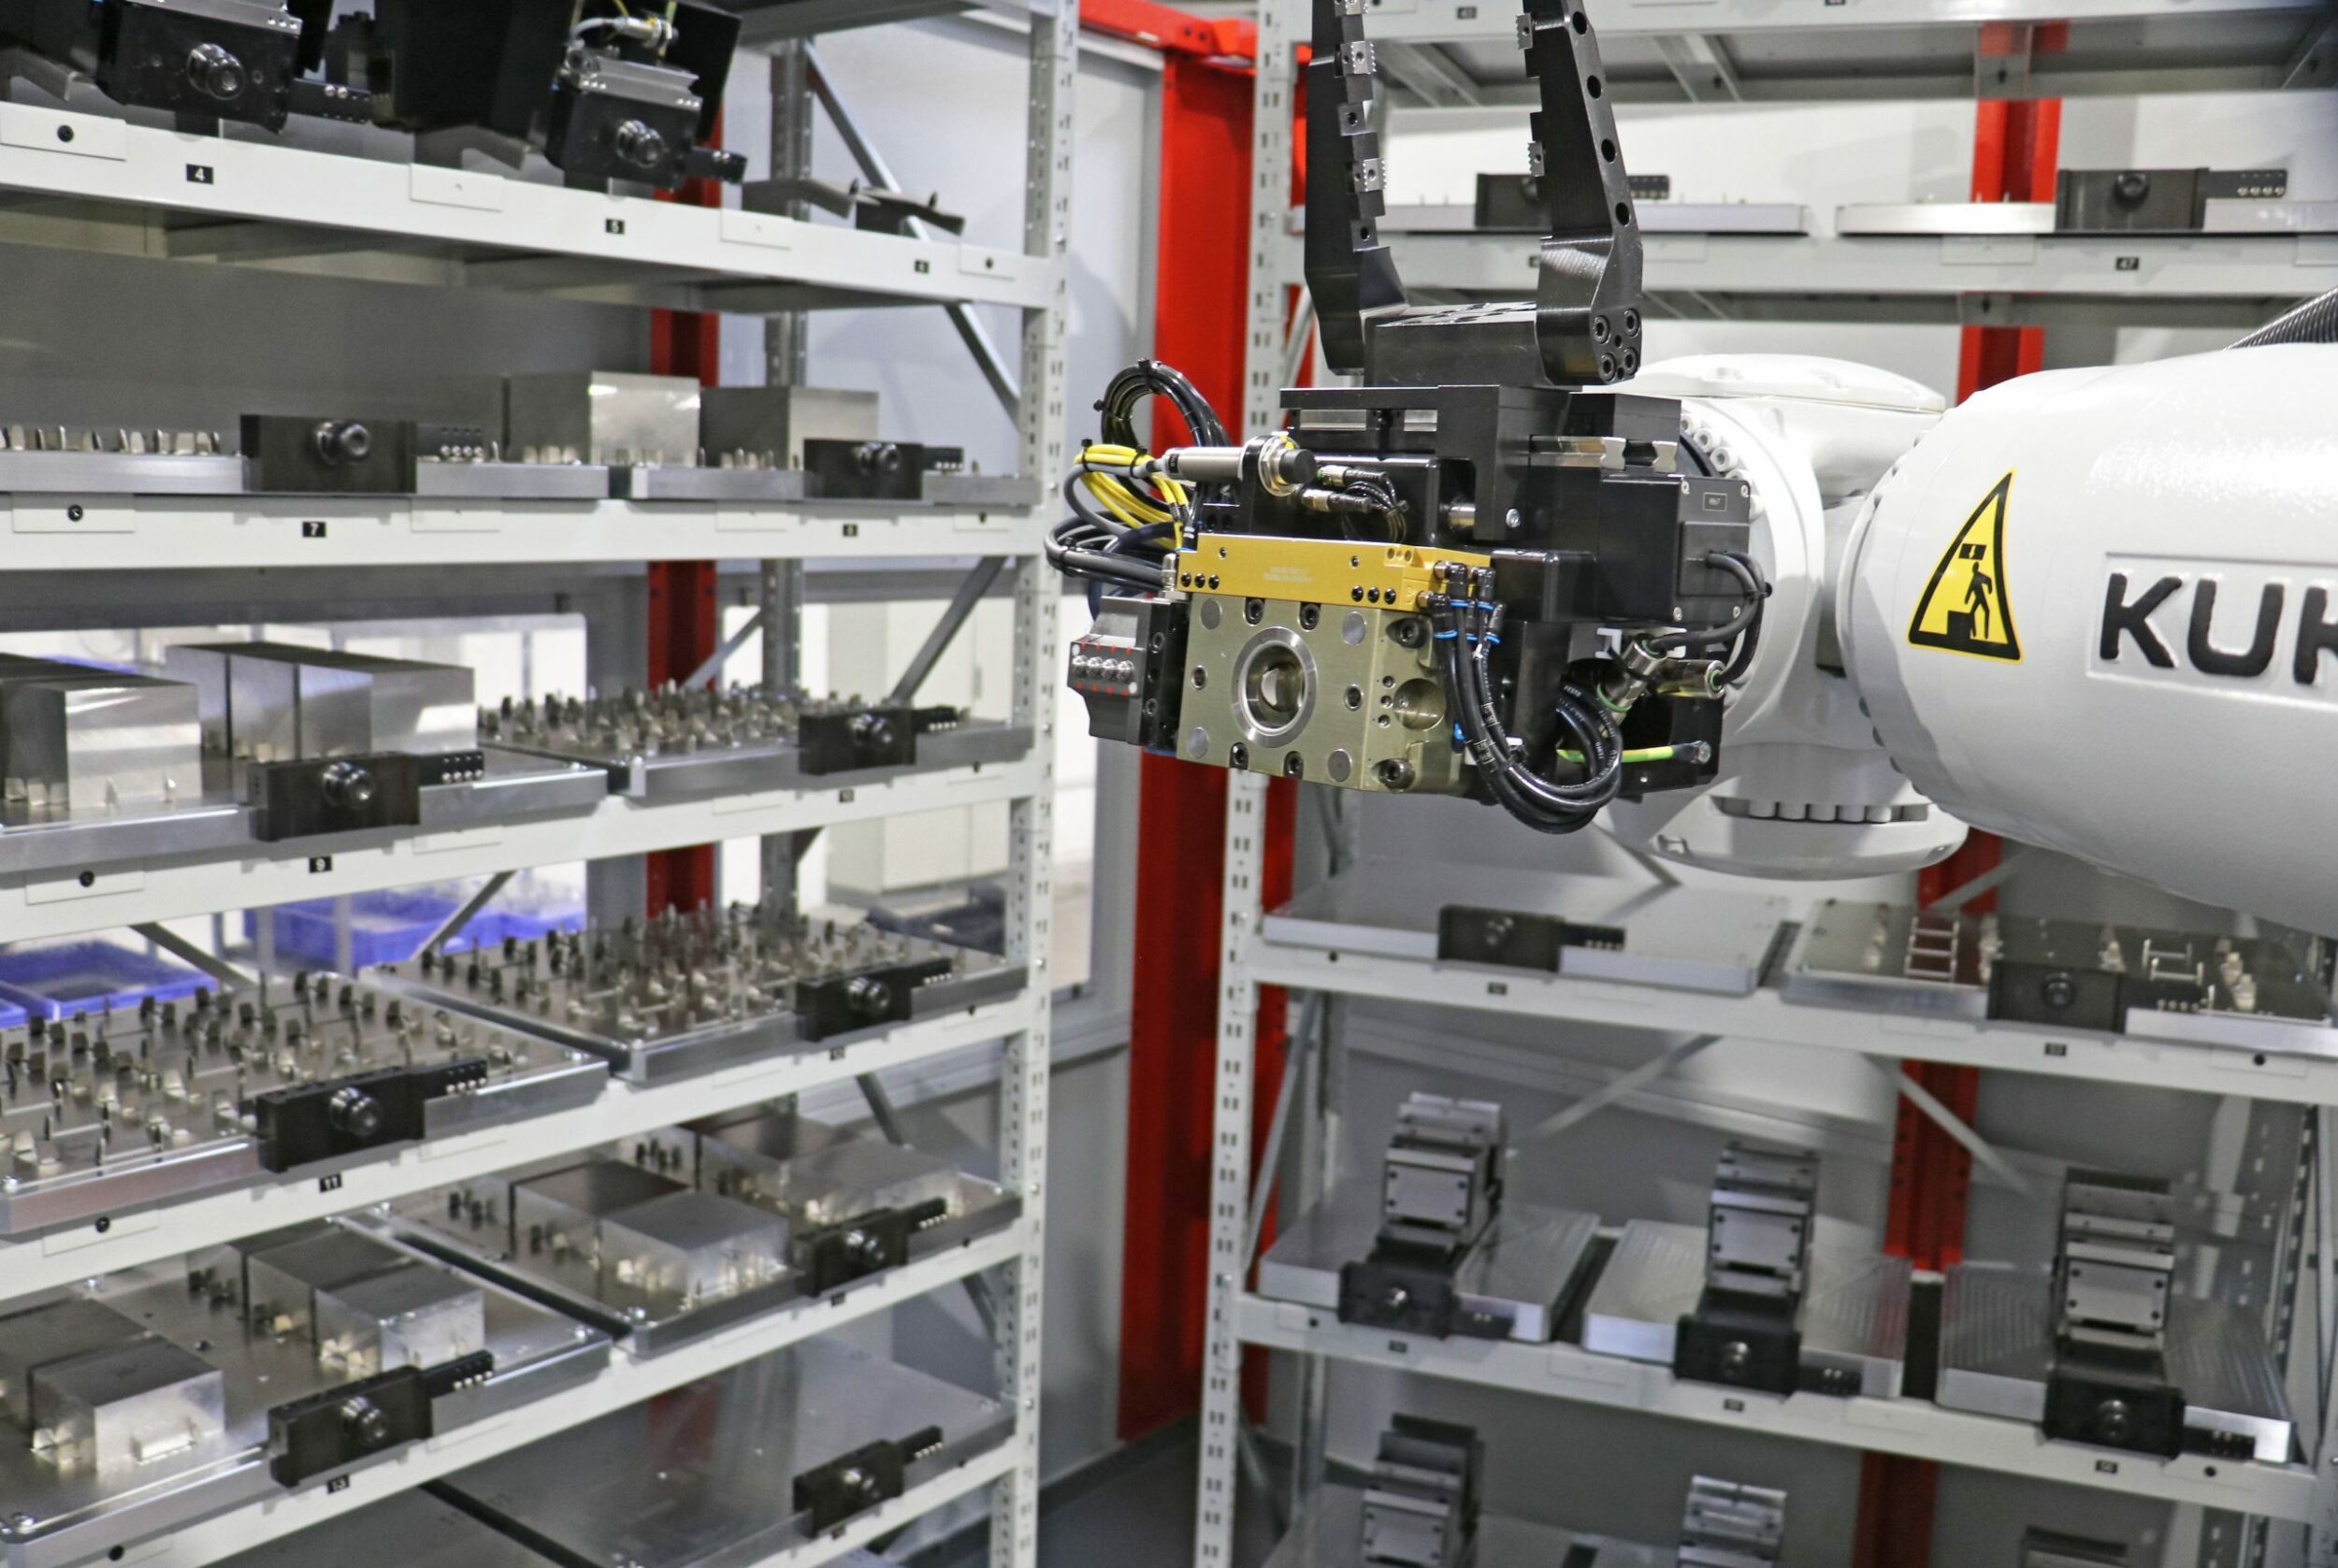 Ein Roboter versorgt das 5-Achs-Bearbeitungszentrum mit vorgerüsteten Werkstückpaletten. (Bild: Open Mind Technologies AG)